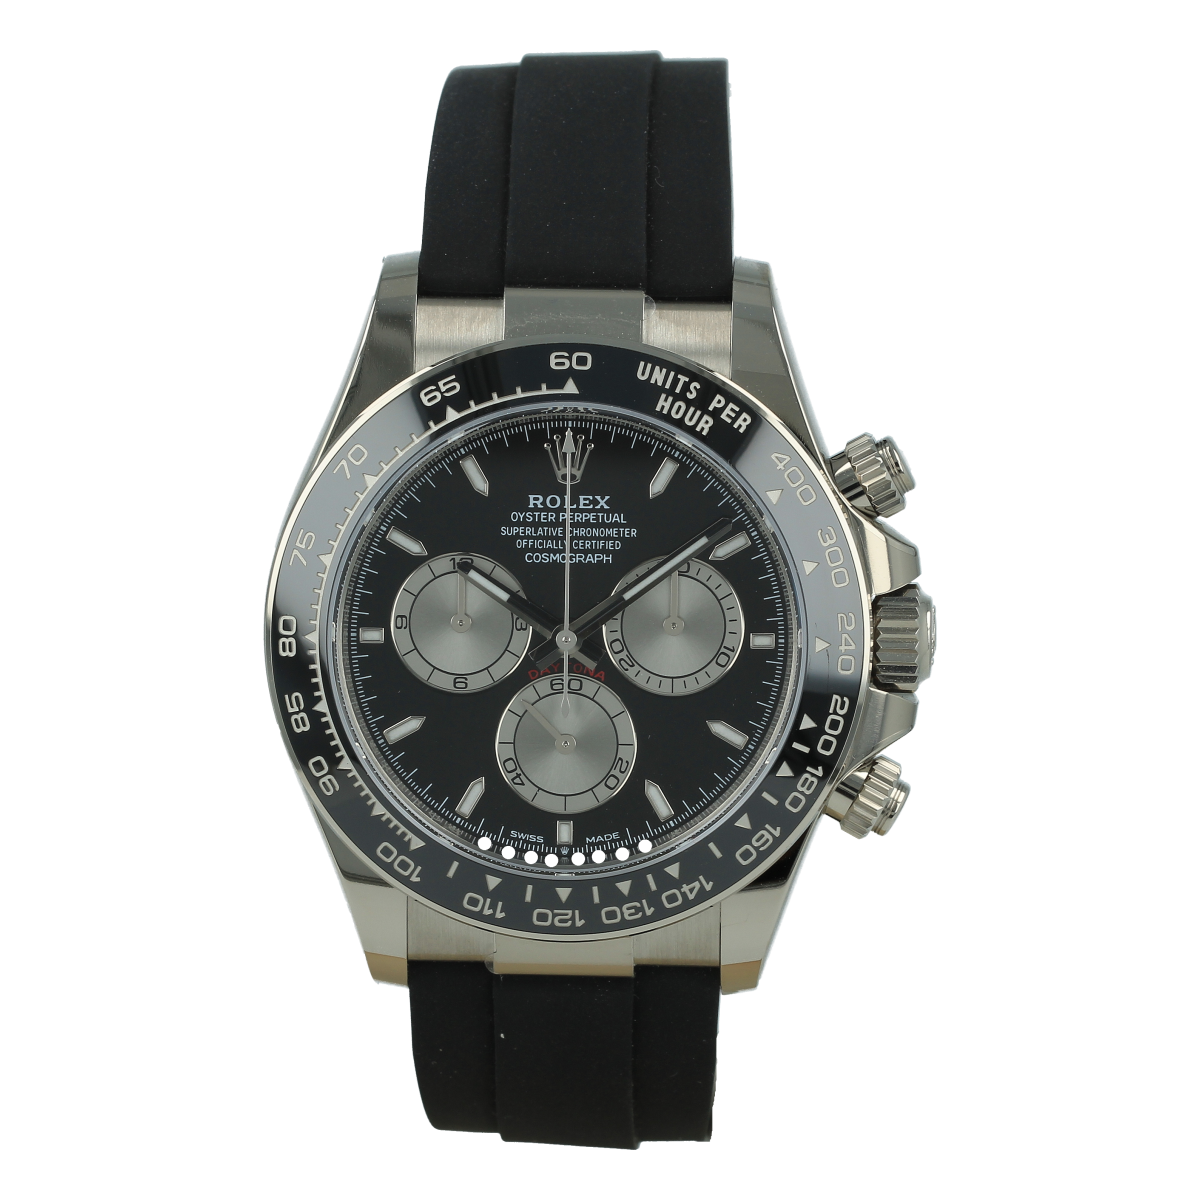 Rolex Cosmograph Daytona 116519LN Oro Blanco Oysterflex *Nuevo a Estrenar* | Comprar reloj Rolex de segunda mano